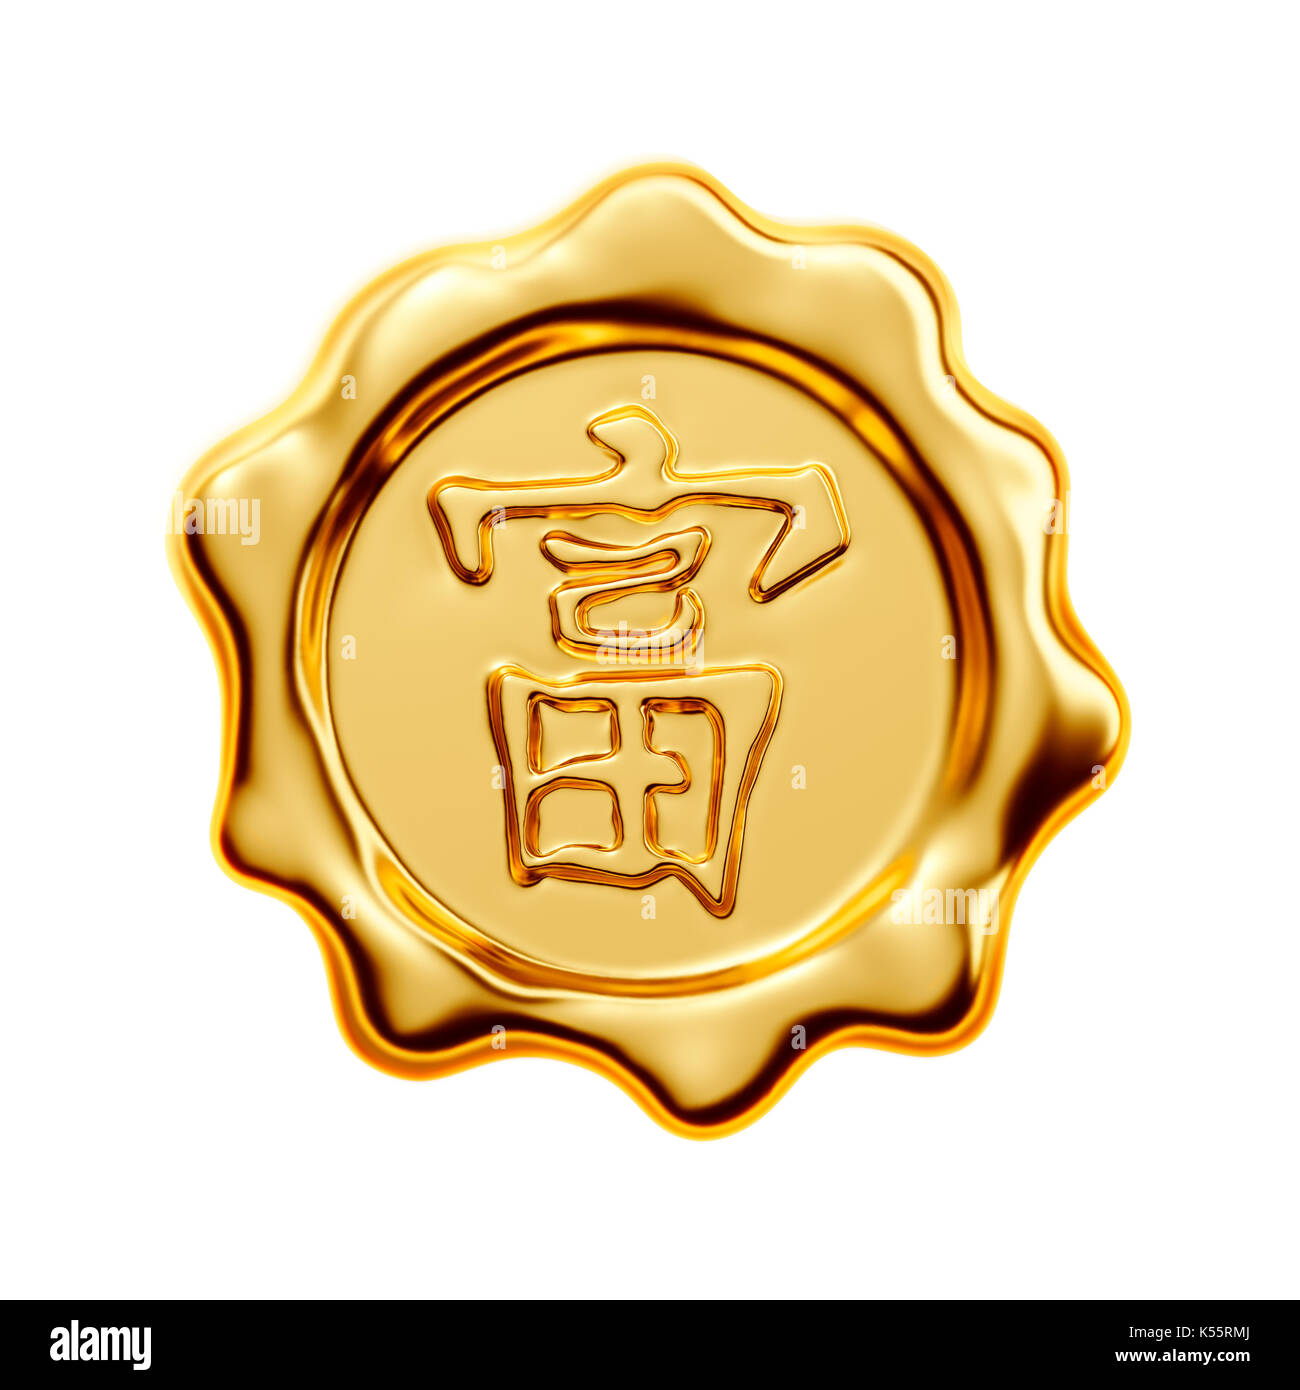 Gold Seal isolati su sfondo bianco, la calligrafia cinese 'fu' (testo straniero significa ricchezza) - 3d rendering Foto Stock